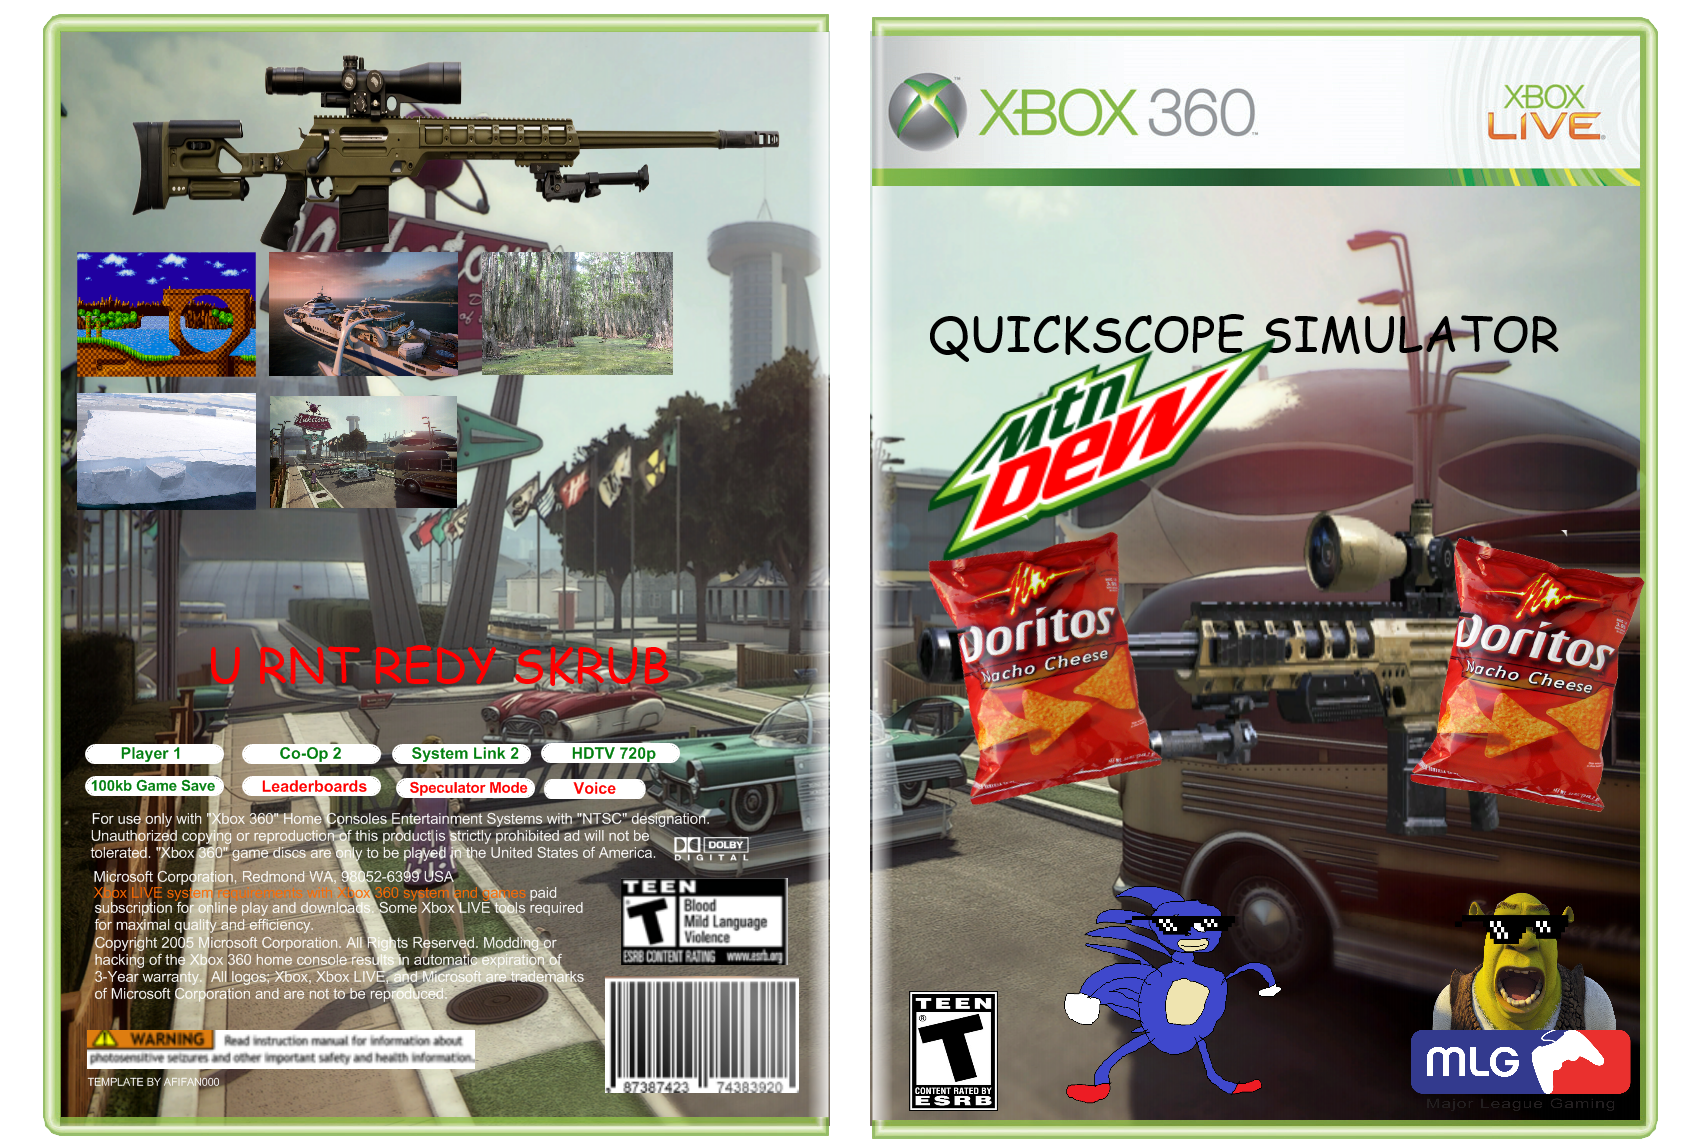 Quickscope Simulator. Симуляторы на Xbox 360. Полиция симулятор Xbox 360. Дрифт симулятор Xbox 360. Симулятор хбокс